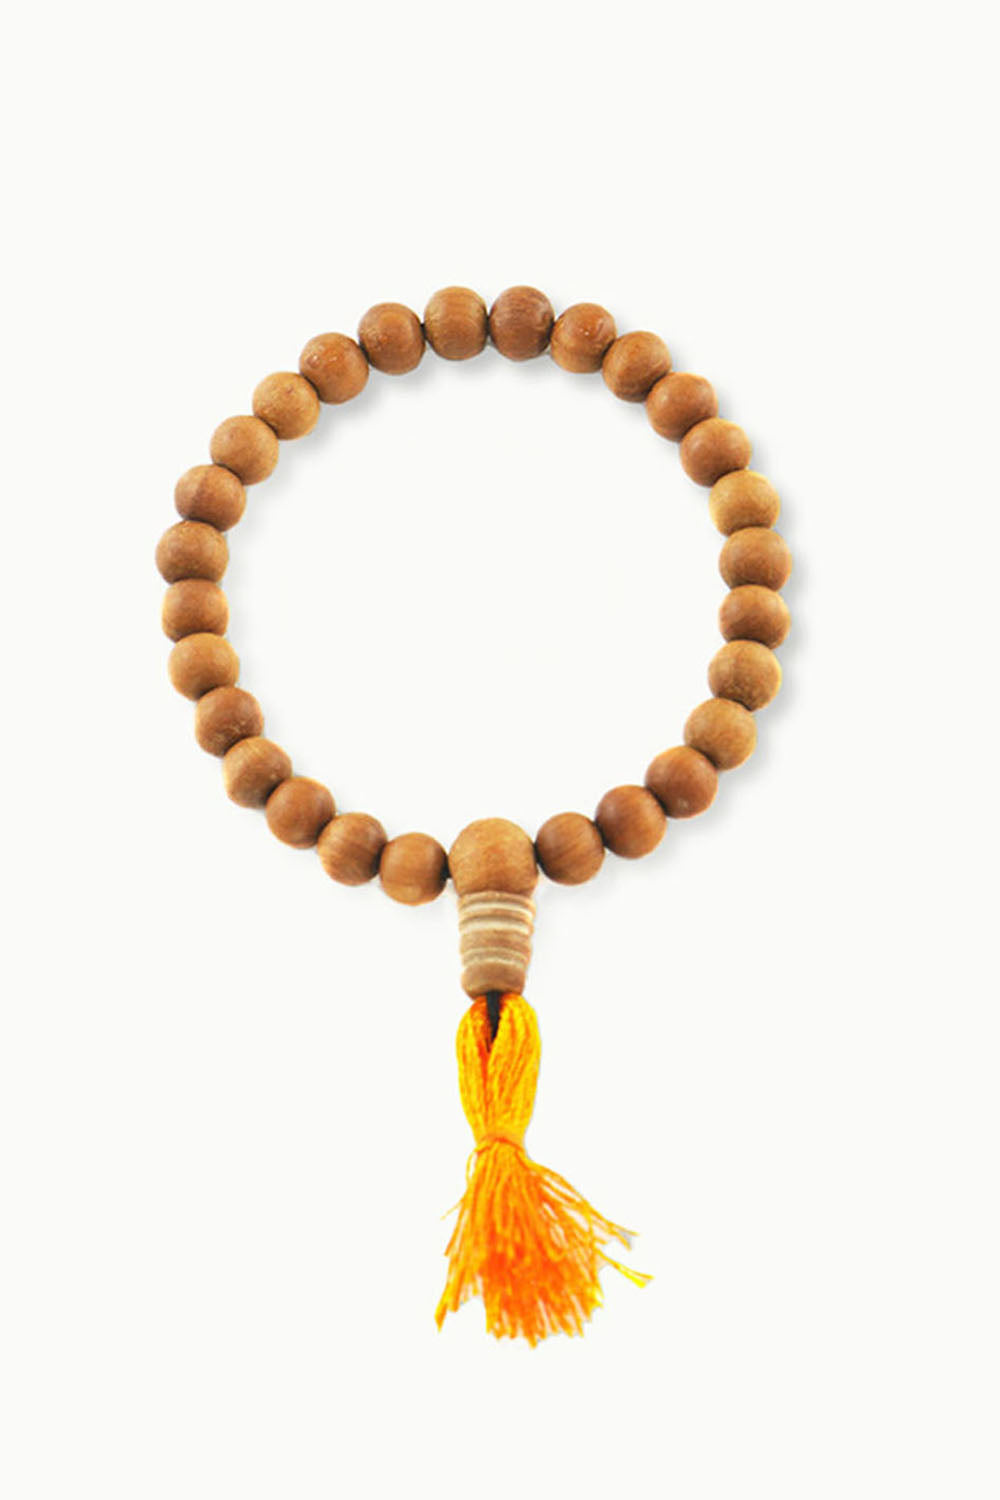 Sandalwood Wrist Yoga Beads with Om Mani guru bead